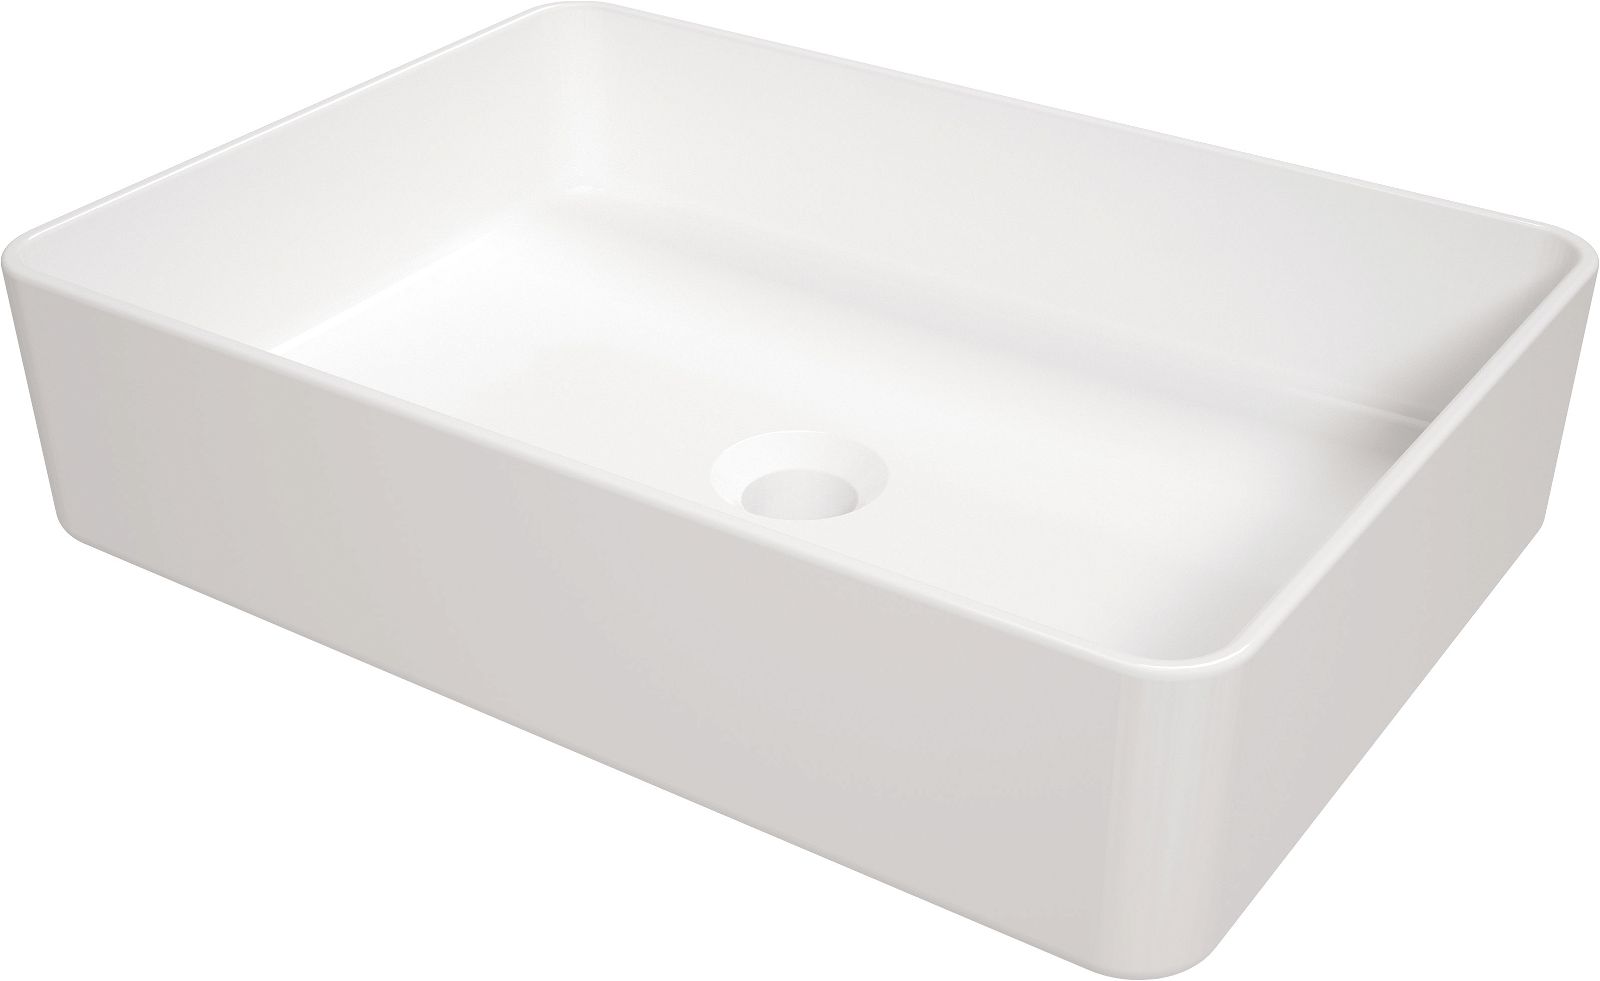 Ceramic washbasin, countertop - CGS_6U5S - Główne zdjęcie produktowe